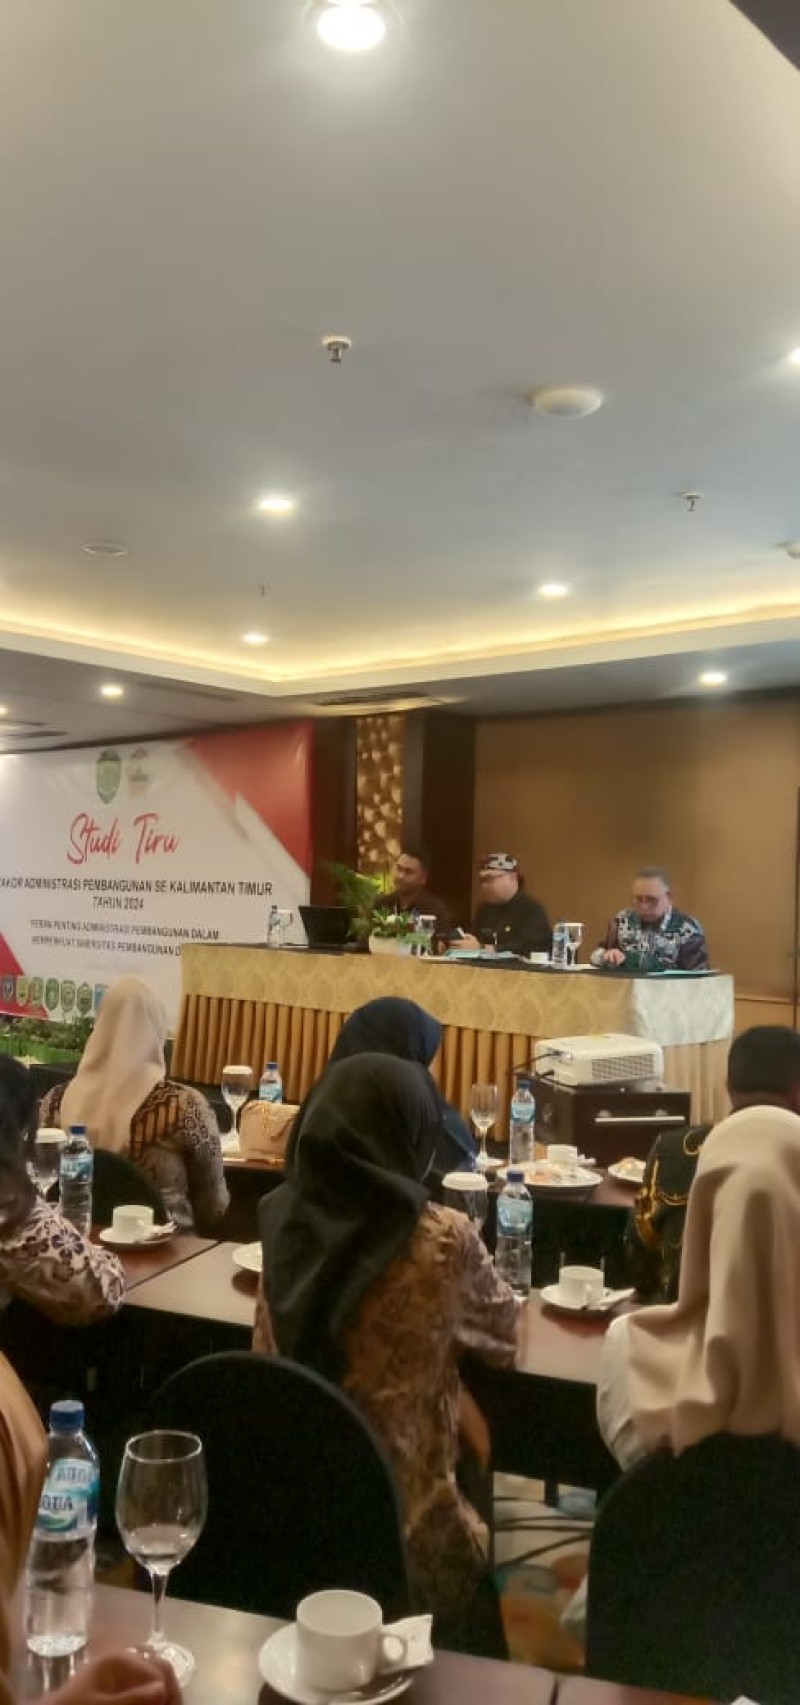 Peserta Rakor Adbang se Kaltim Lanjut Studi Tiru di Semarang